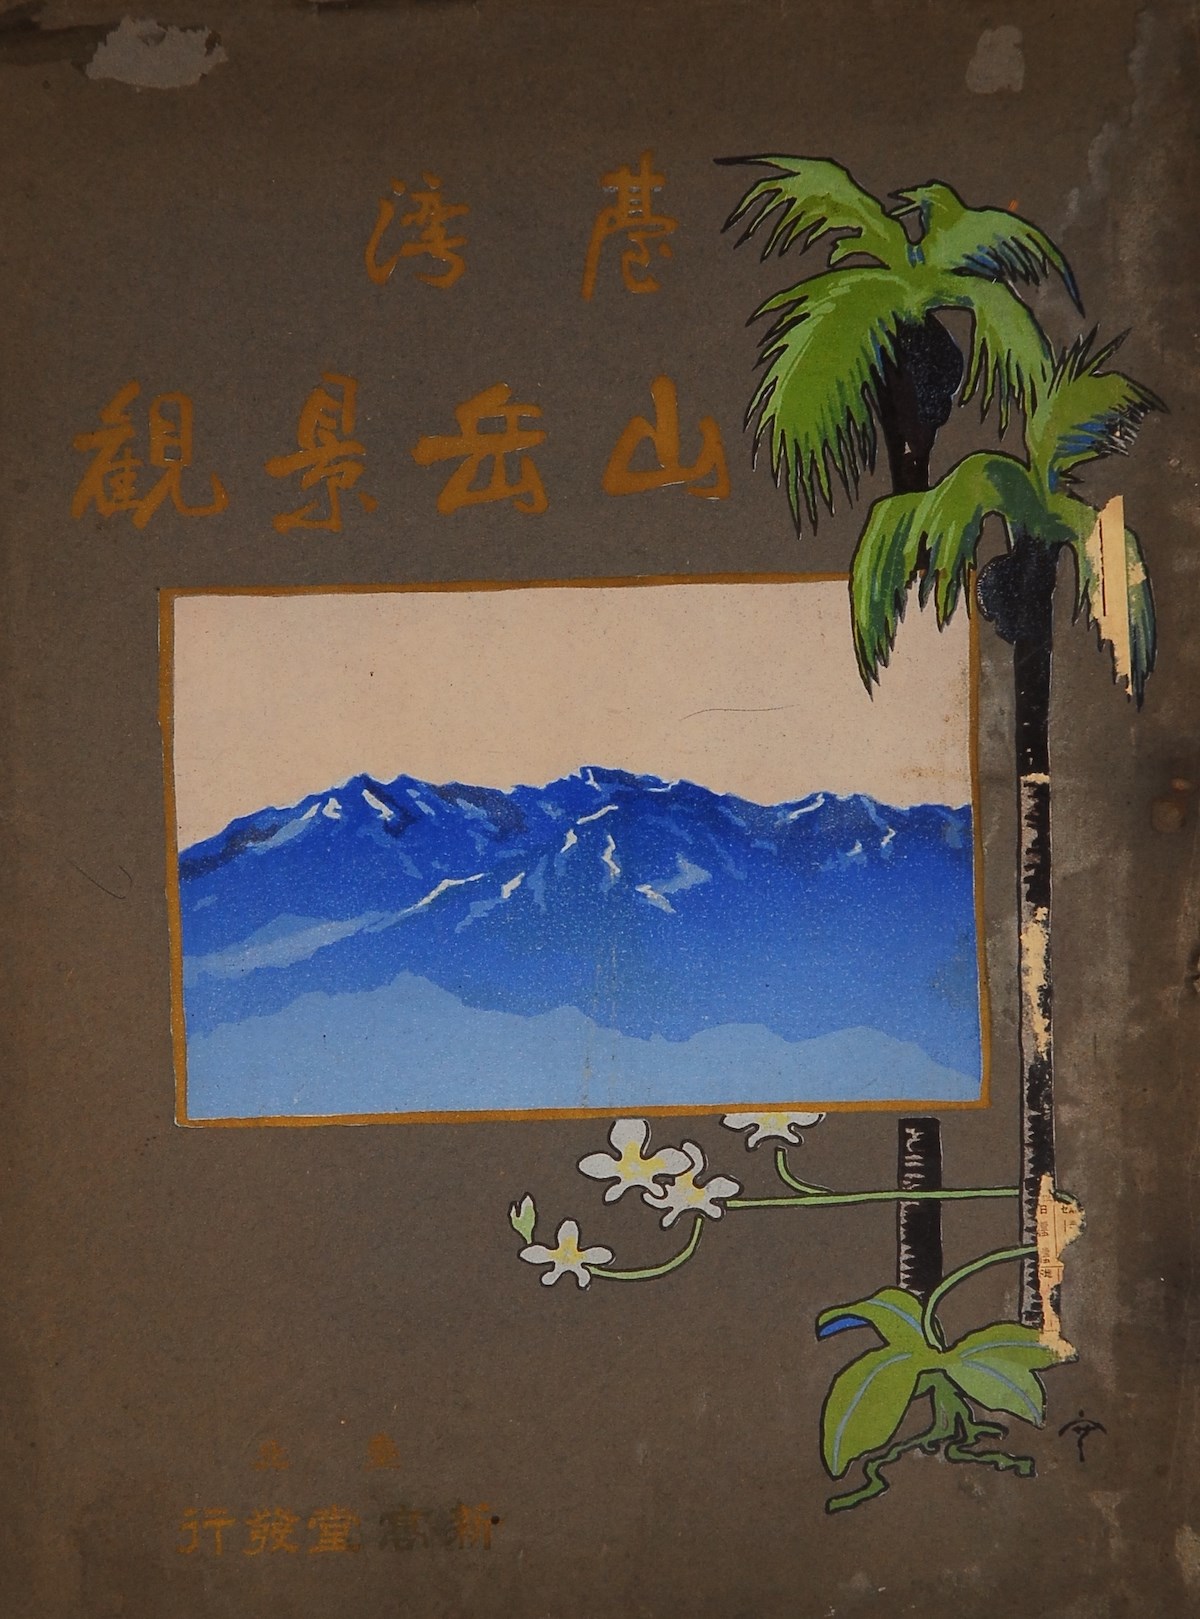 臺灣山林的百年追求：《臺灣山岳景觀》蘊含的治理與造訪